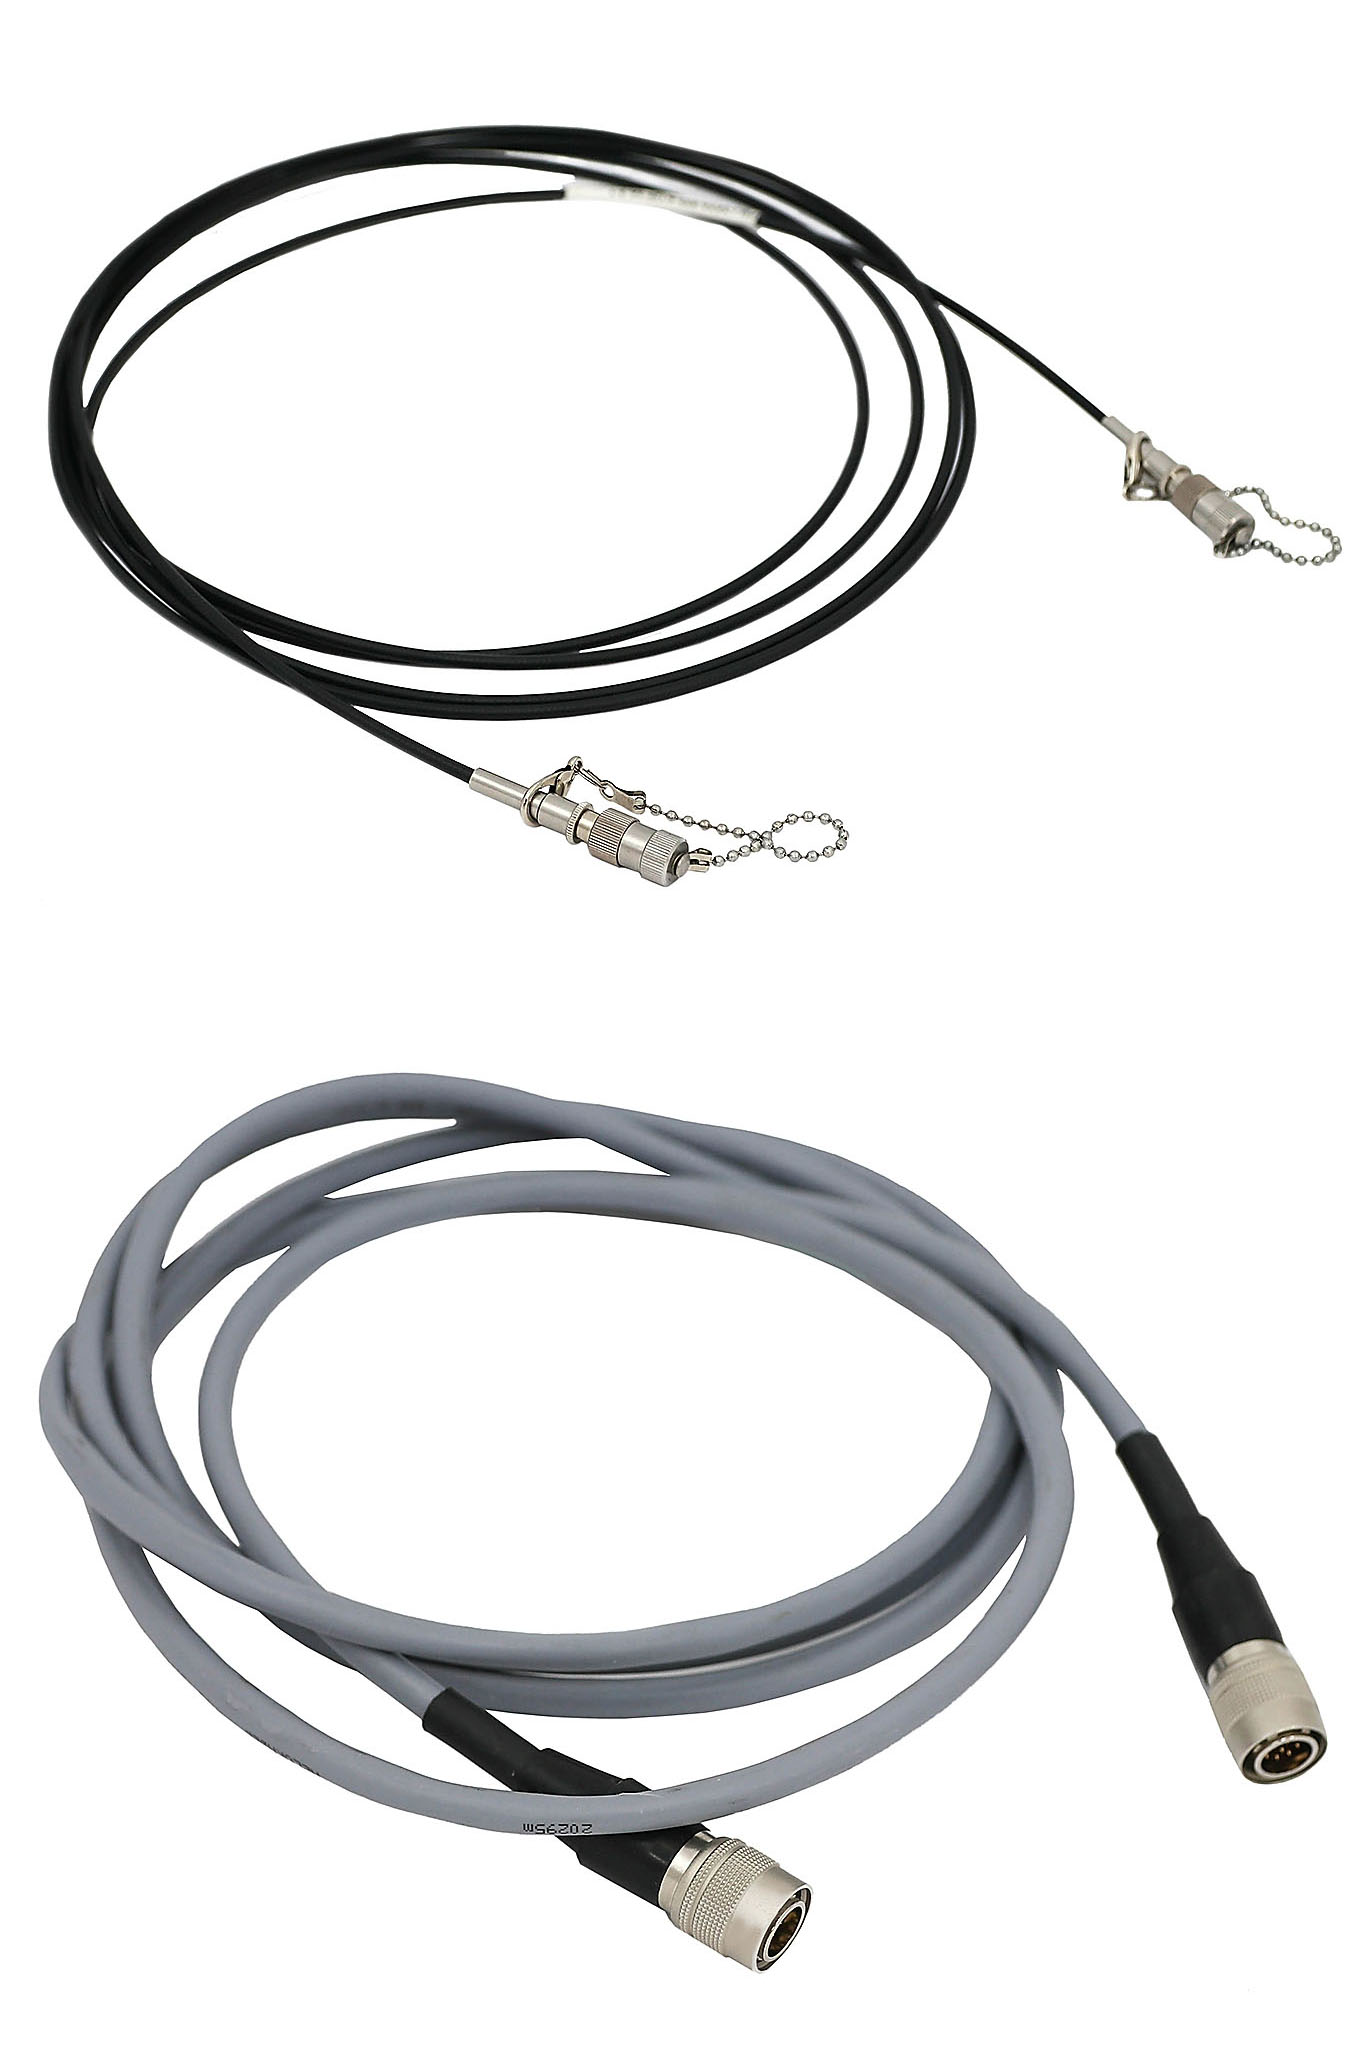 Cables for laser encoder